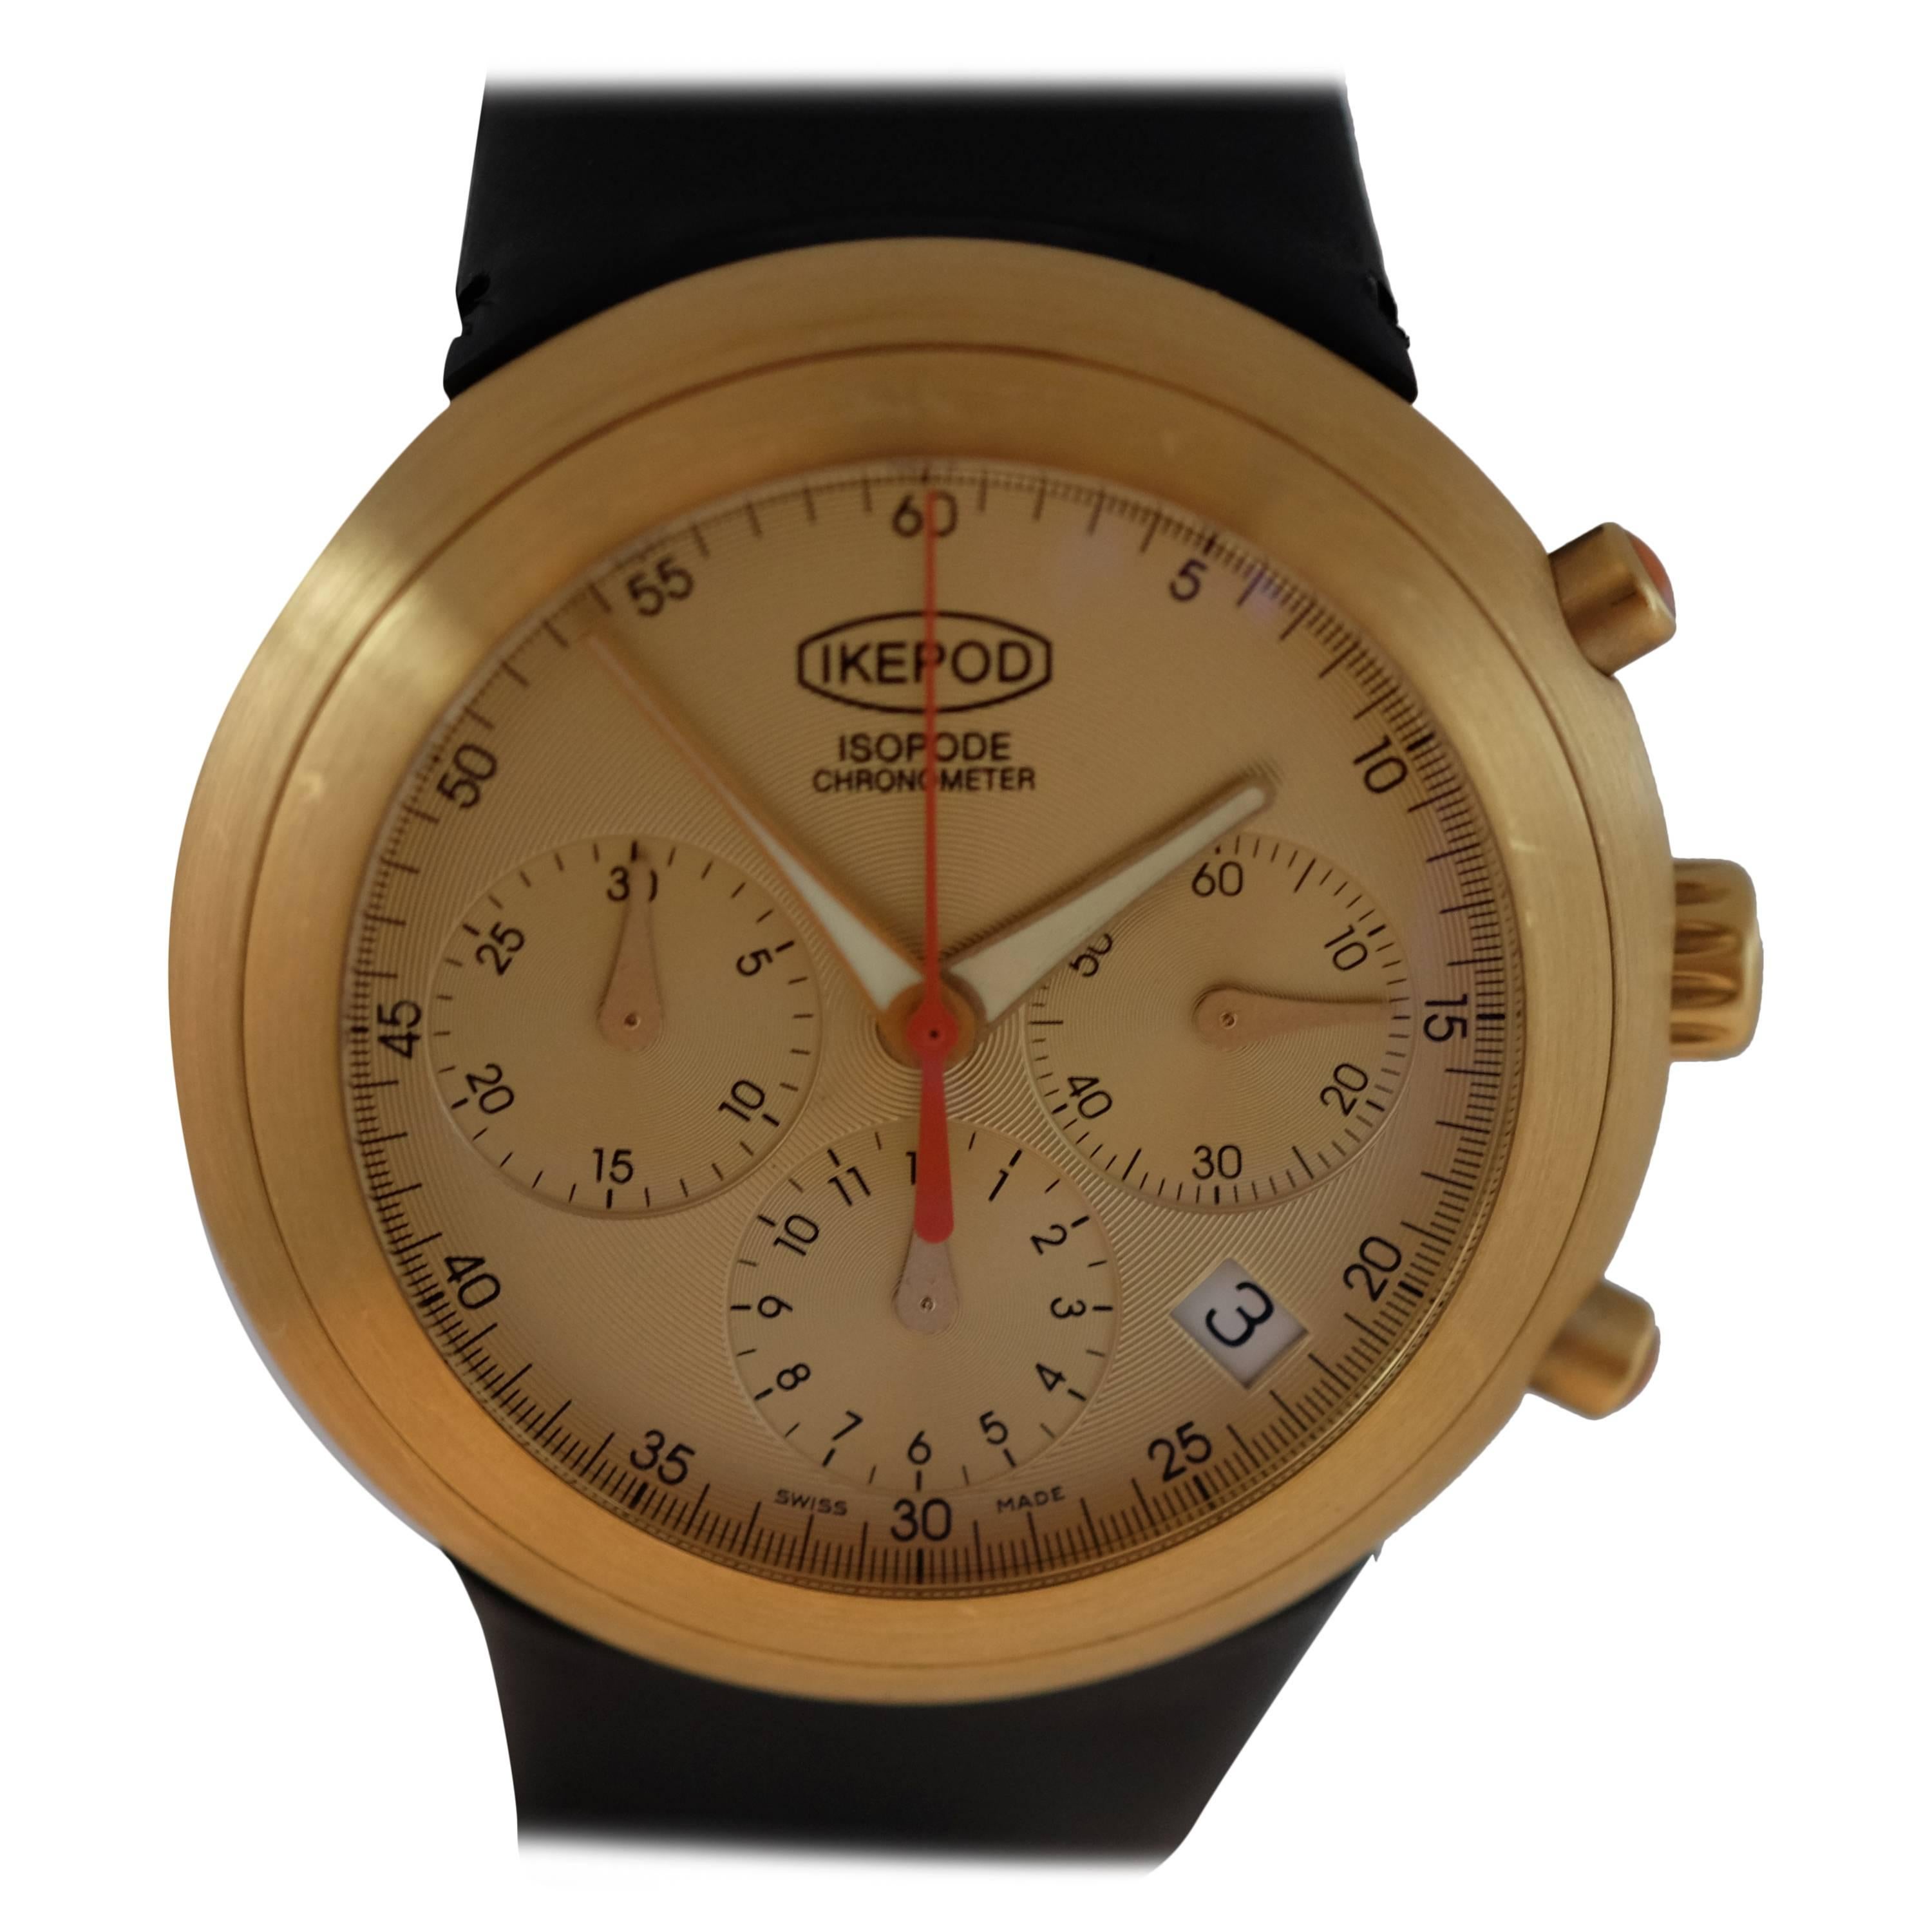 Ikepod Yellow gold isopode chronograph automatic wristwatch